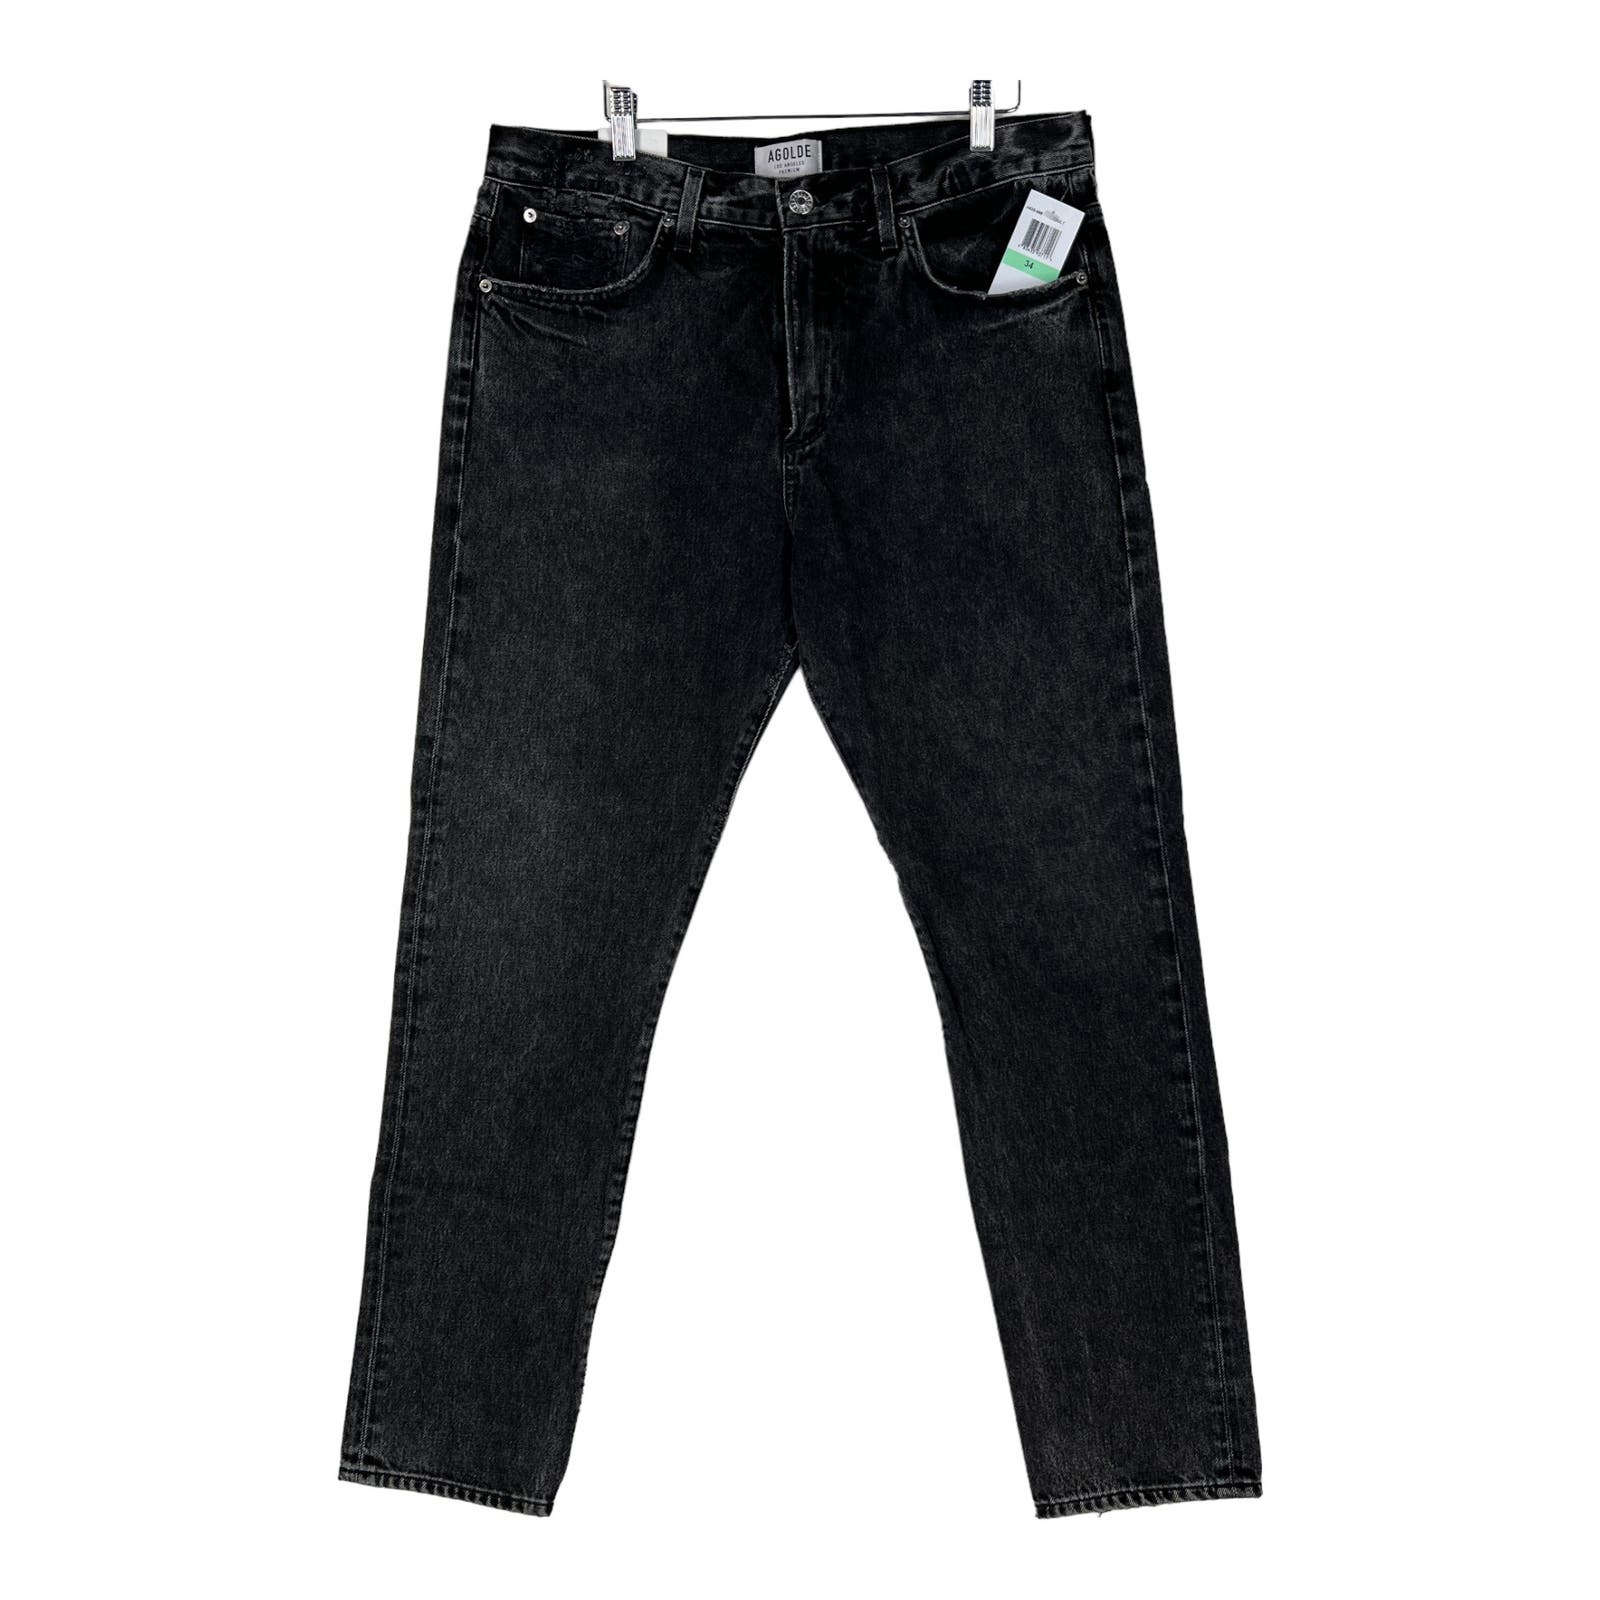 Agolde Men Jeans US 34 Slim Fit Denim Washed Cotton